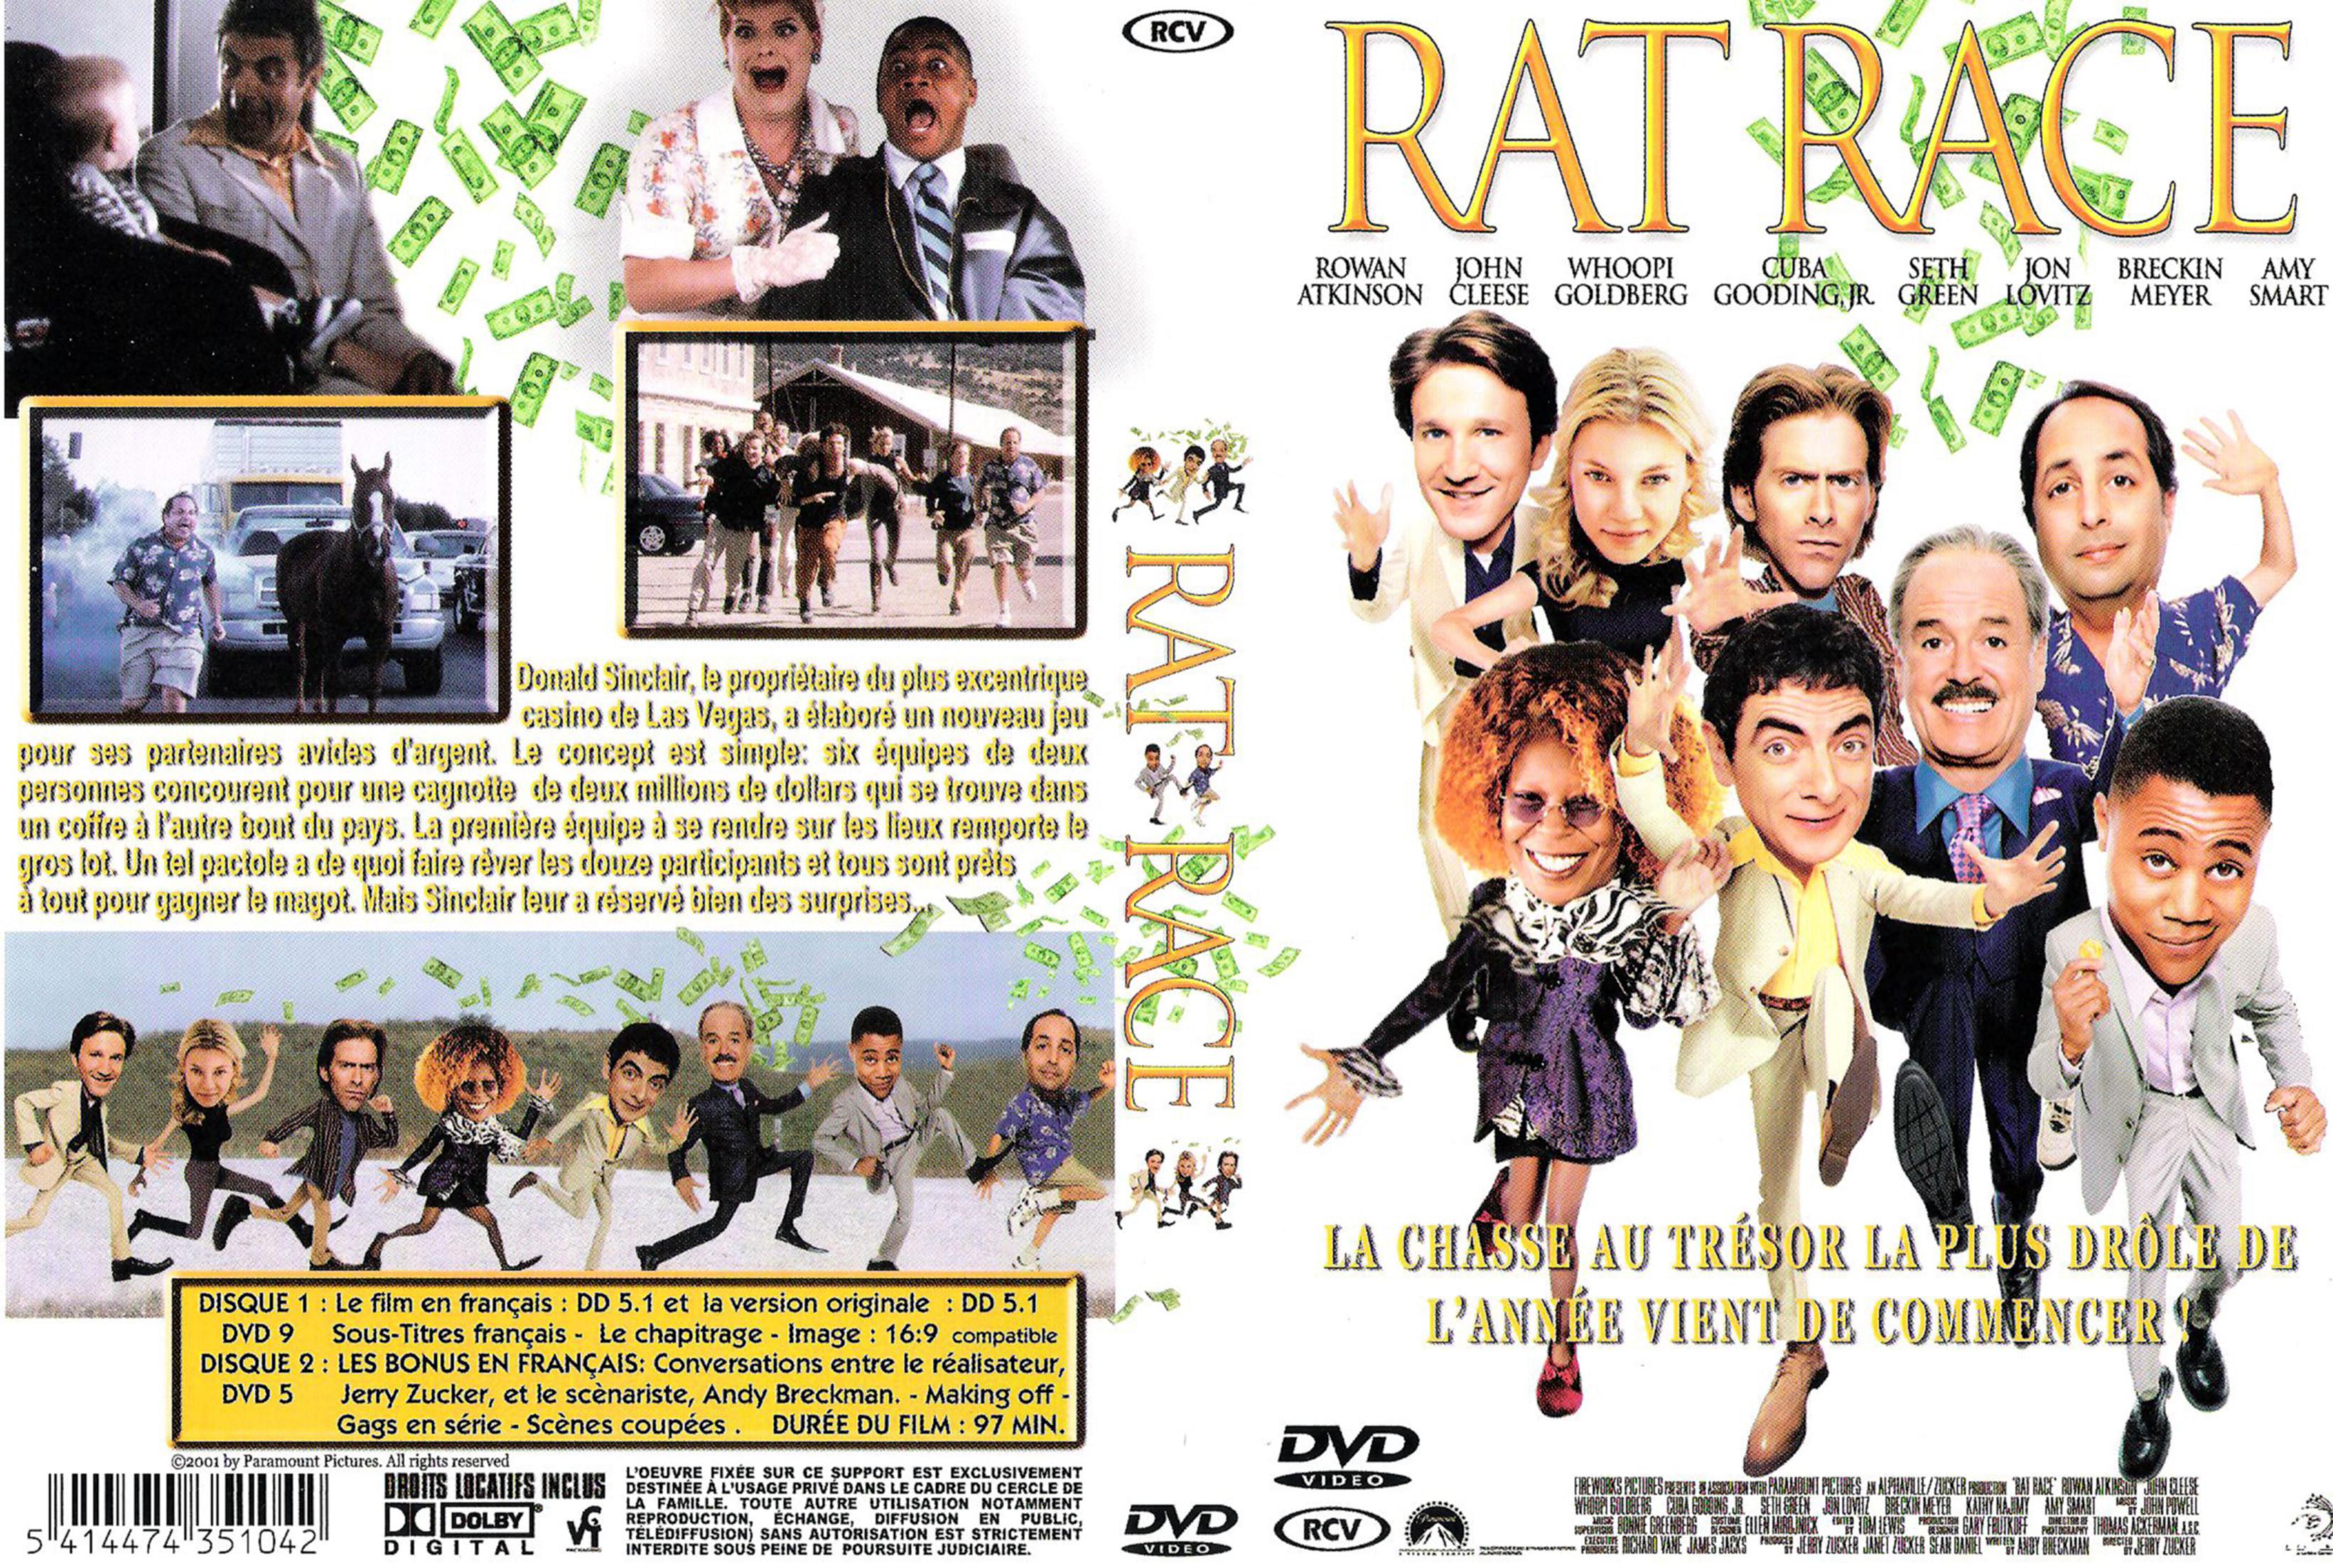 Jaquette DVD Rat race